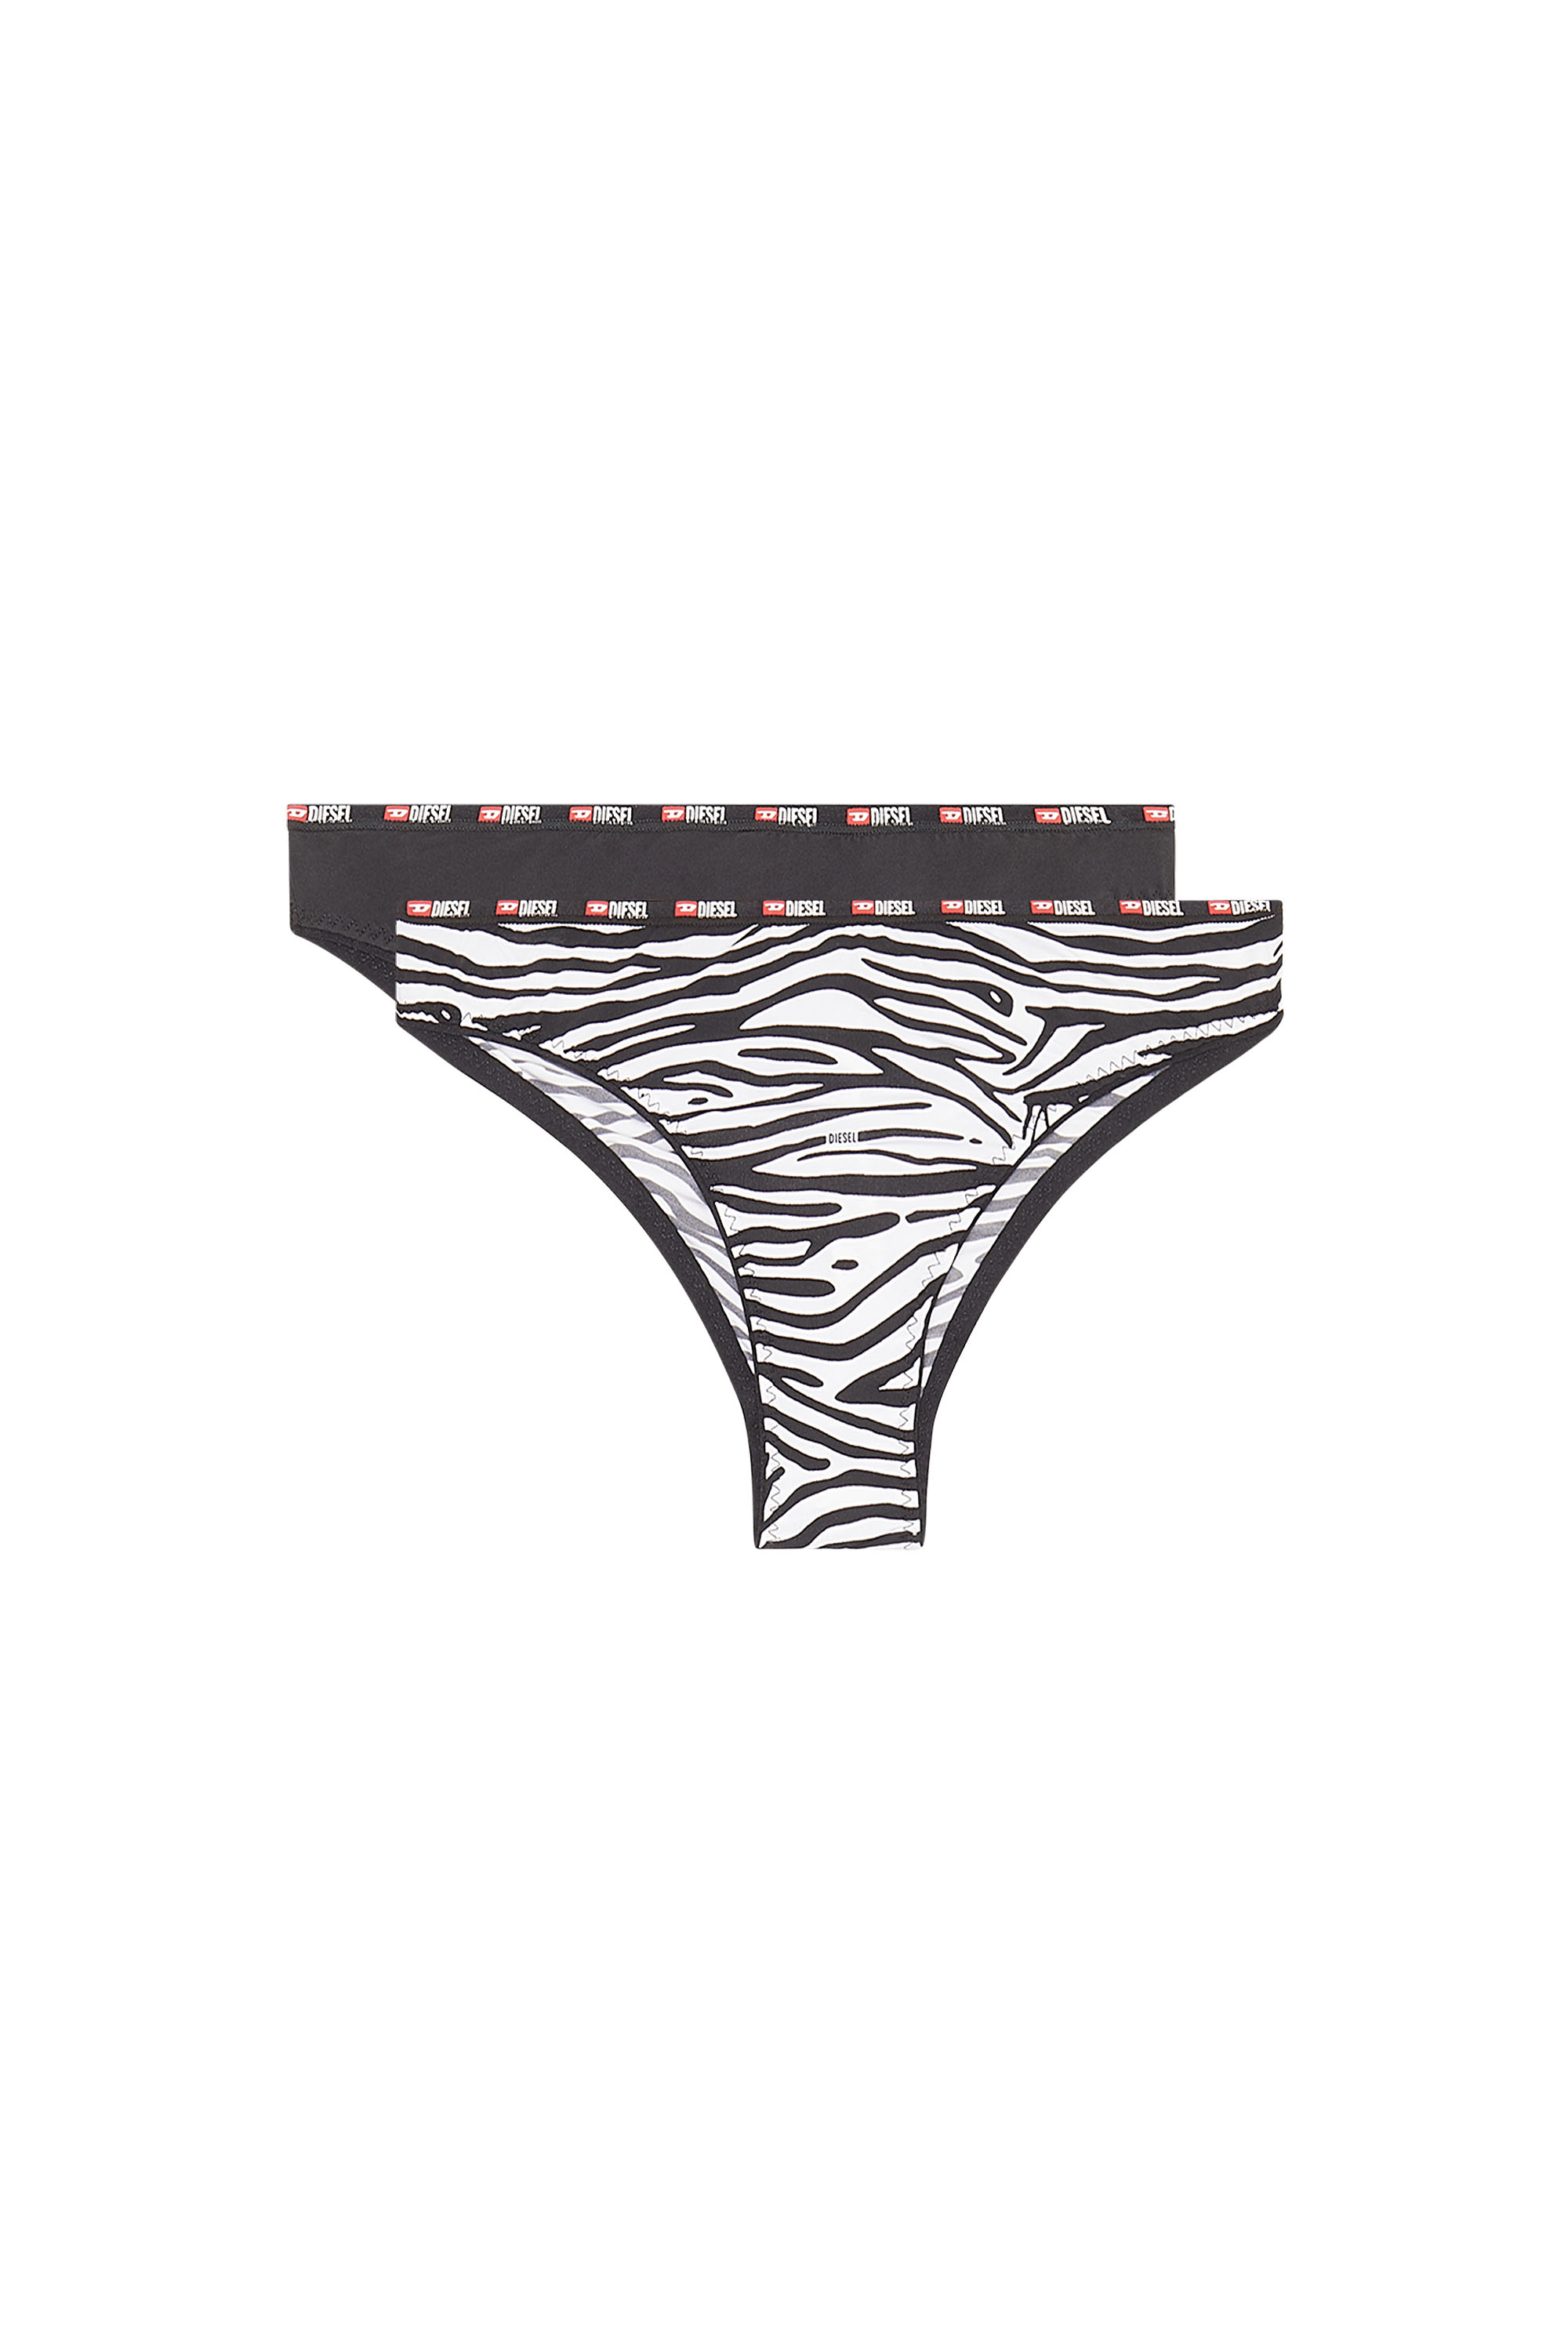 Diesel - Einfarbige und Zebra-Print-Briefs für Damen im Zweierpack - Panties - Damen - Bunt